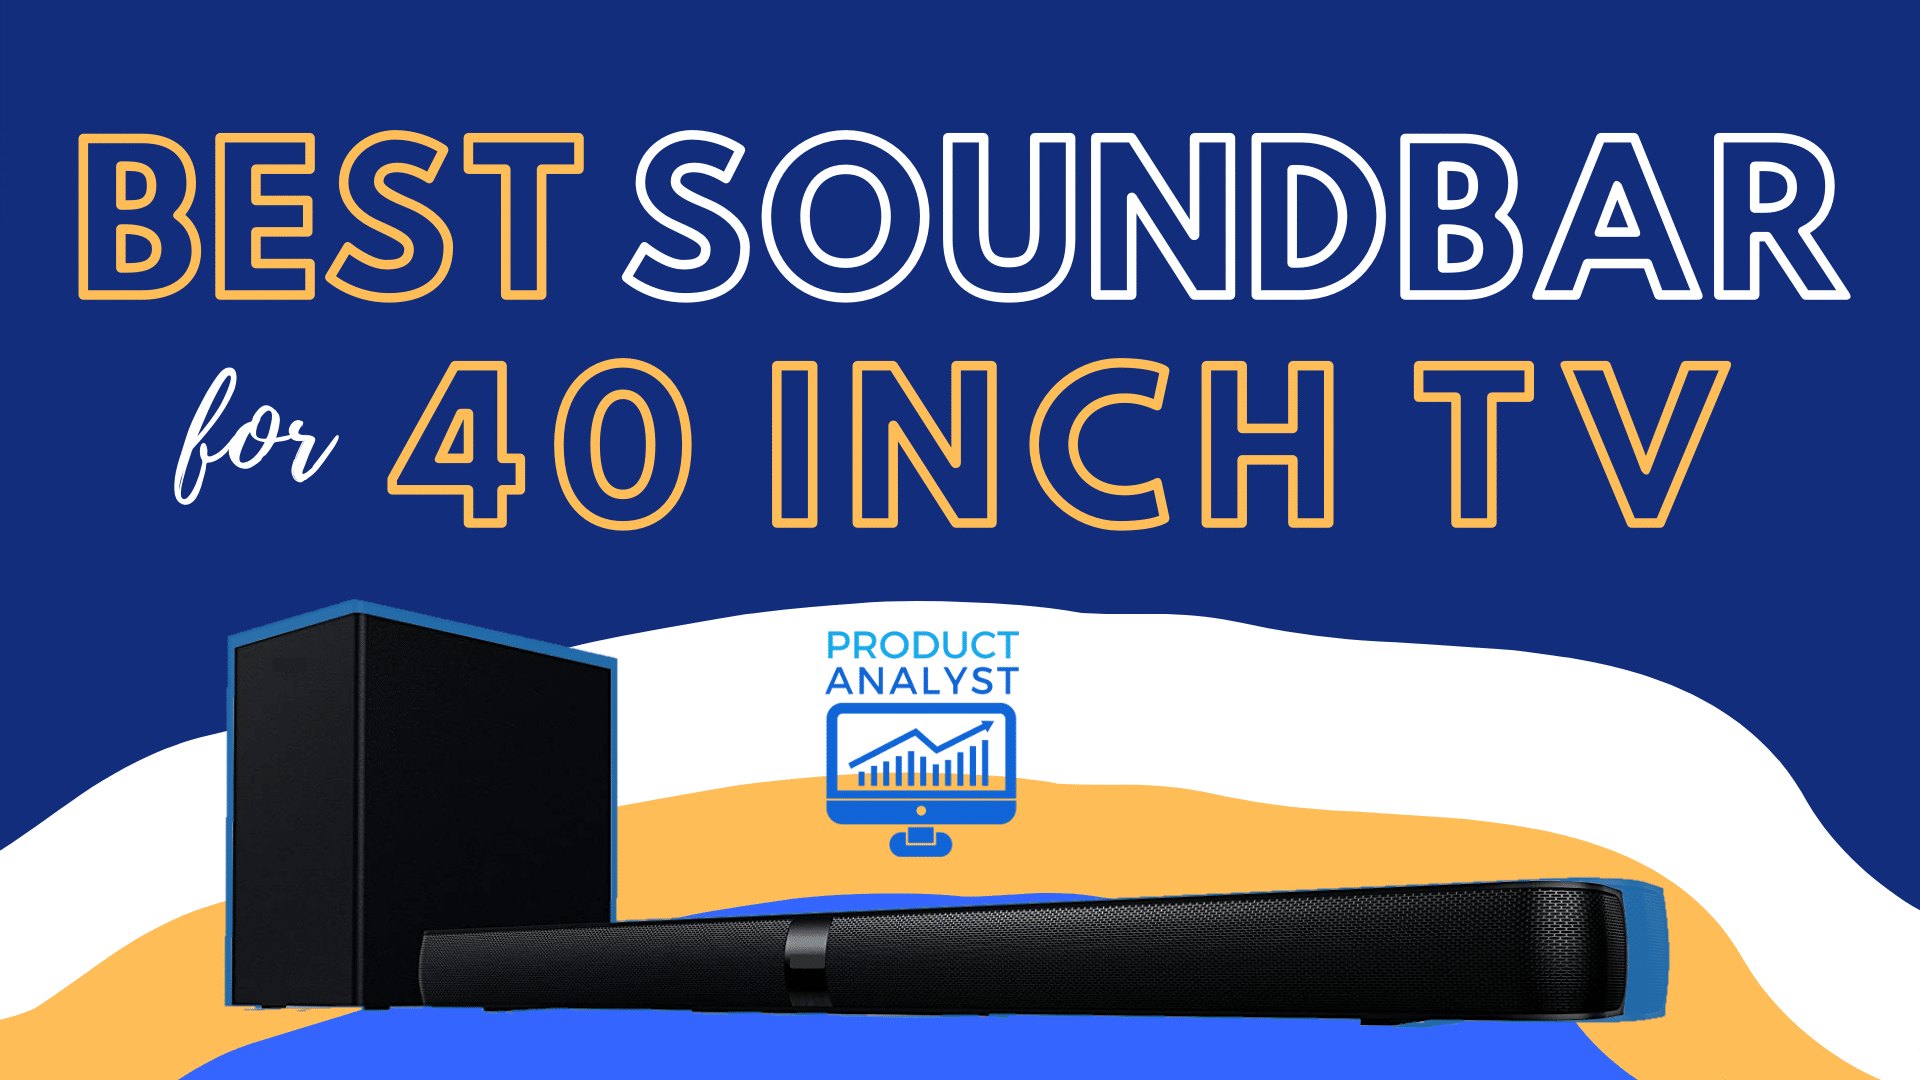 Framework Ingen En effektiv 3 Best Soundbars for 40 Inch TV: Standard TV, Booming Sound!